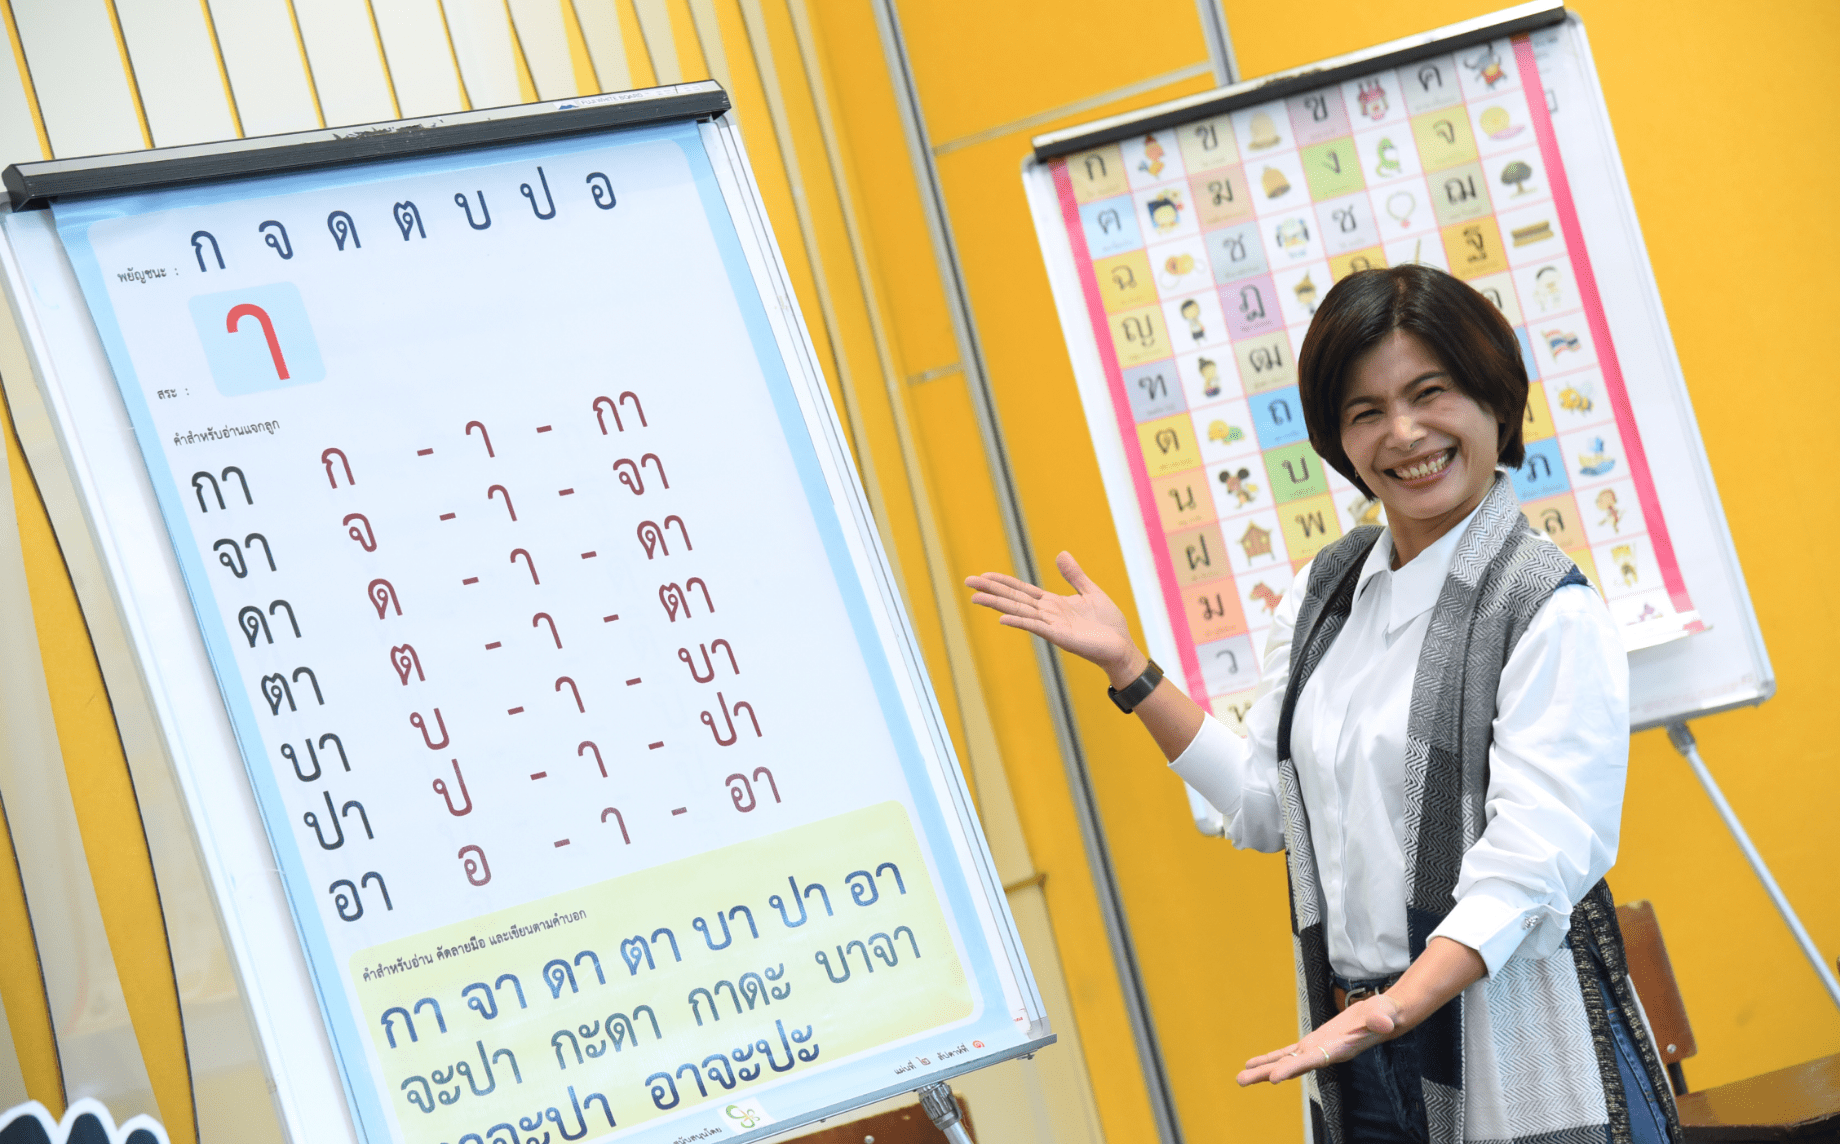 บนเส้นทางเคียงข้างครูภาษาไทย